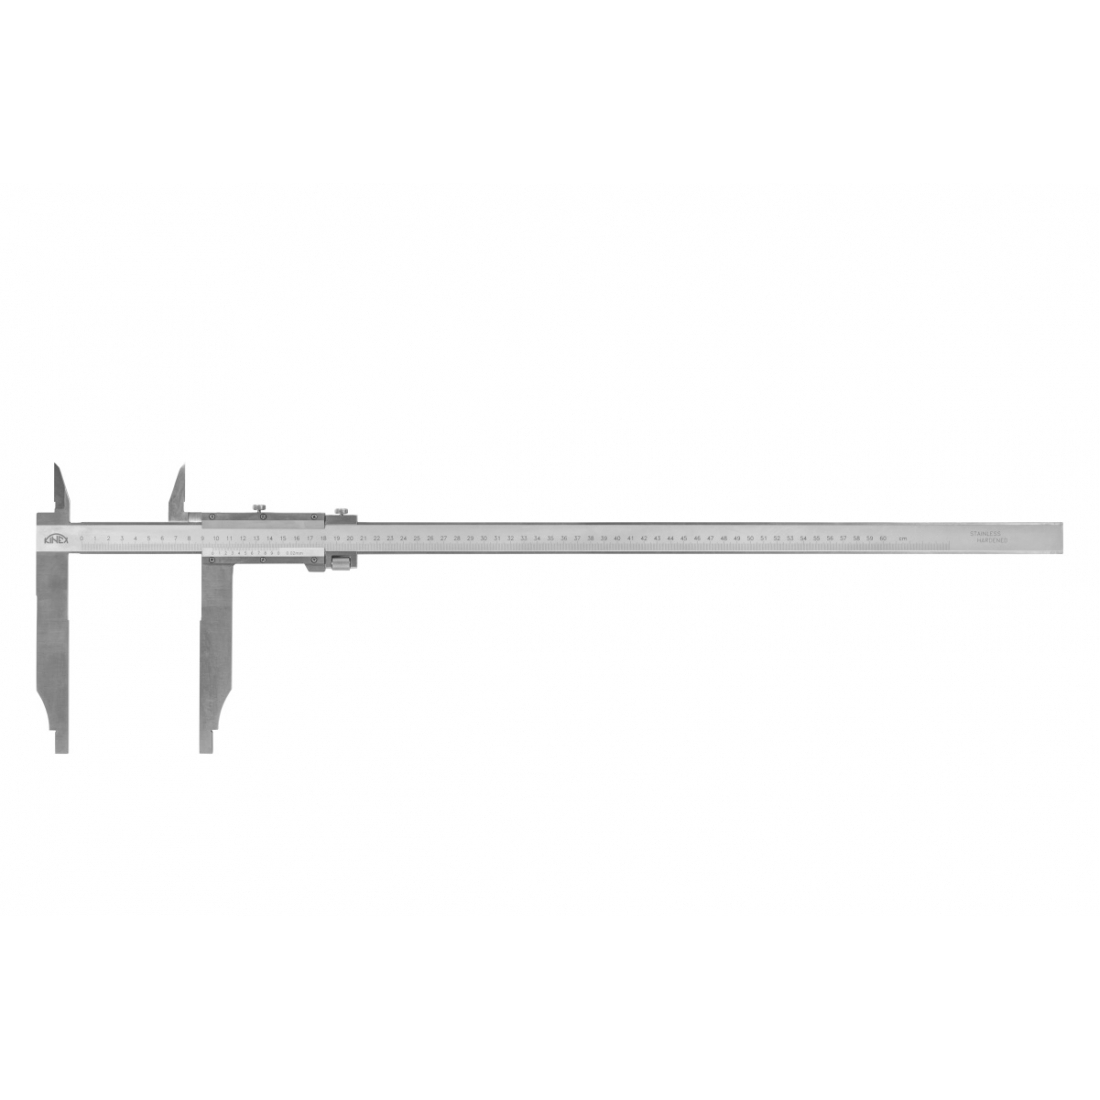 KINEX/K-MET Posuvné měřítko s jemným stavěním KINEX 1500 mm, 200 mm, 0,05 mm, s horními noži, ČSN 25 1231, DIN 862